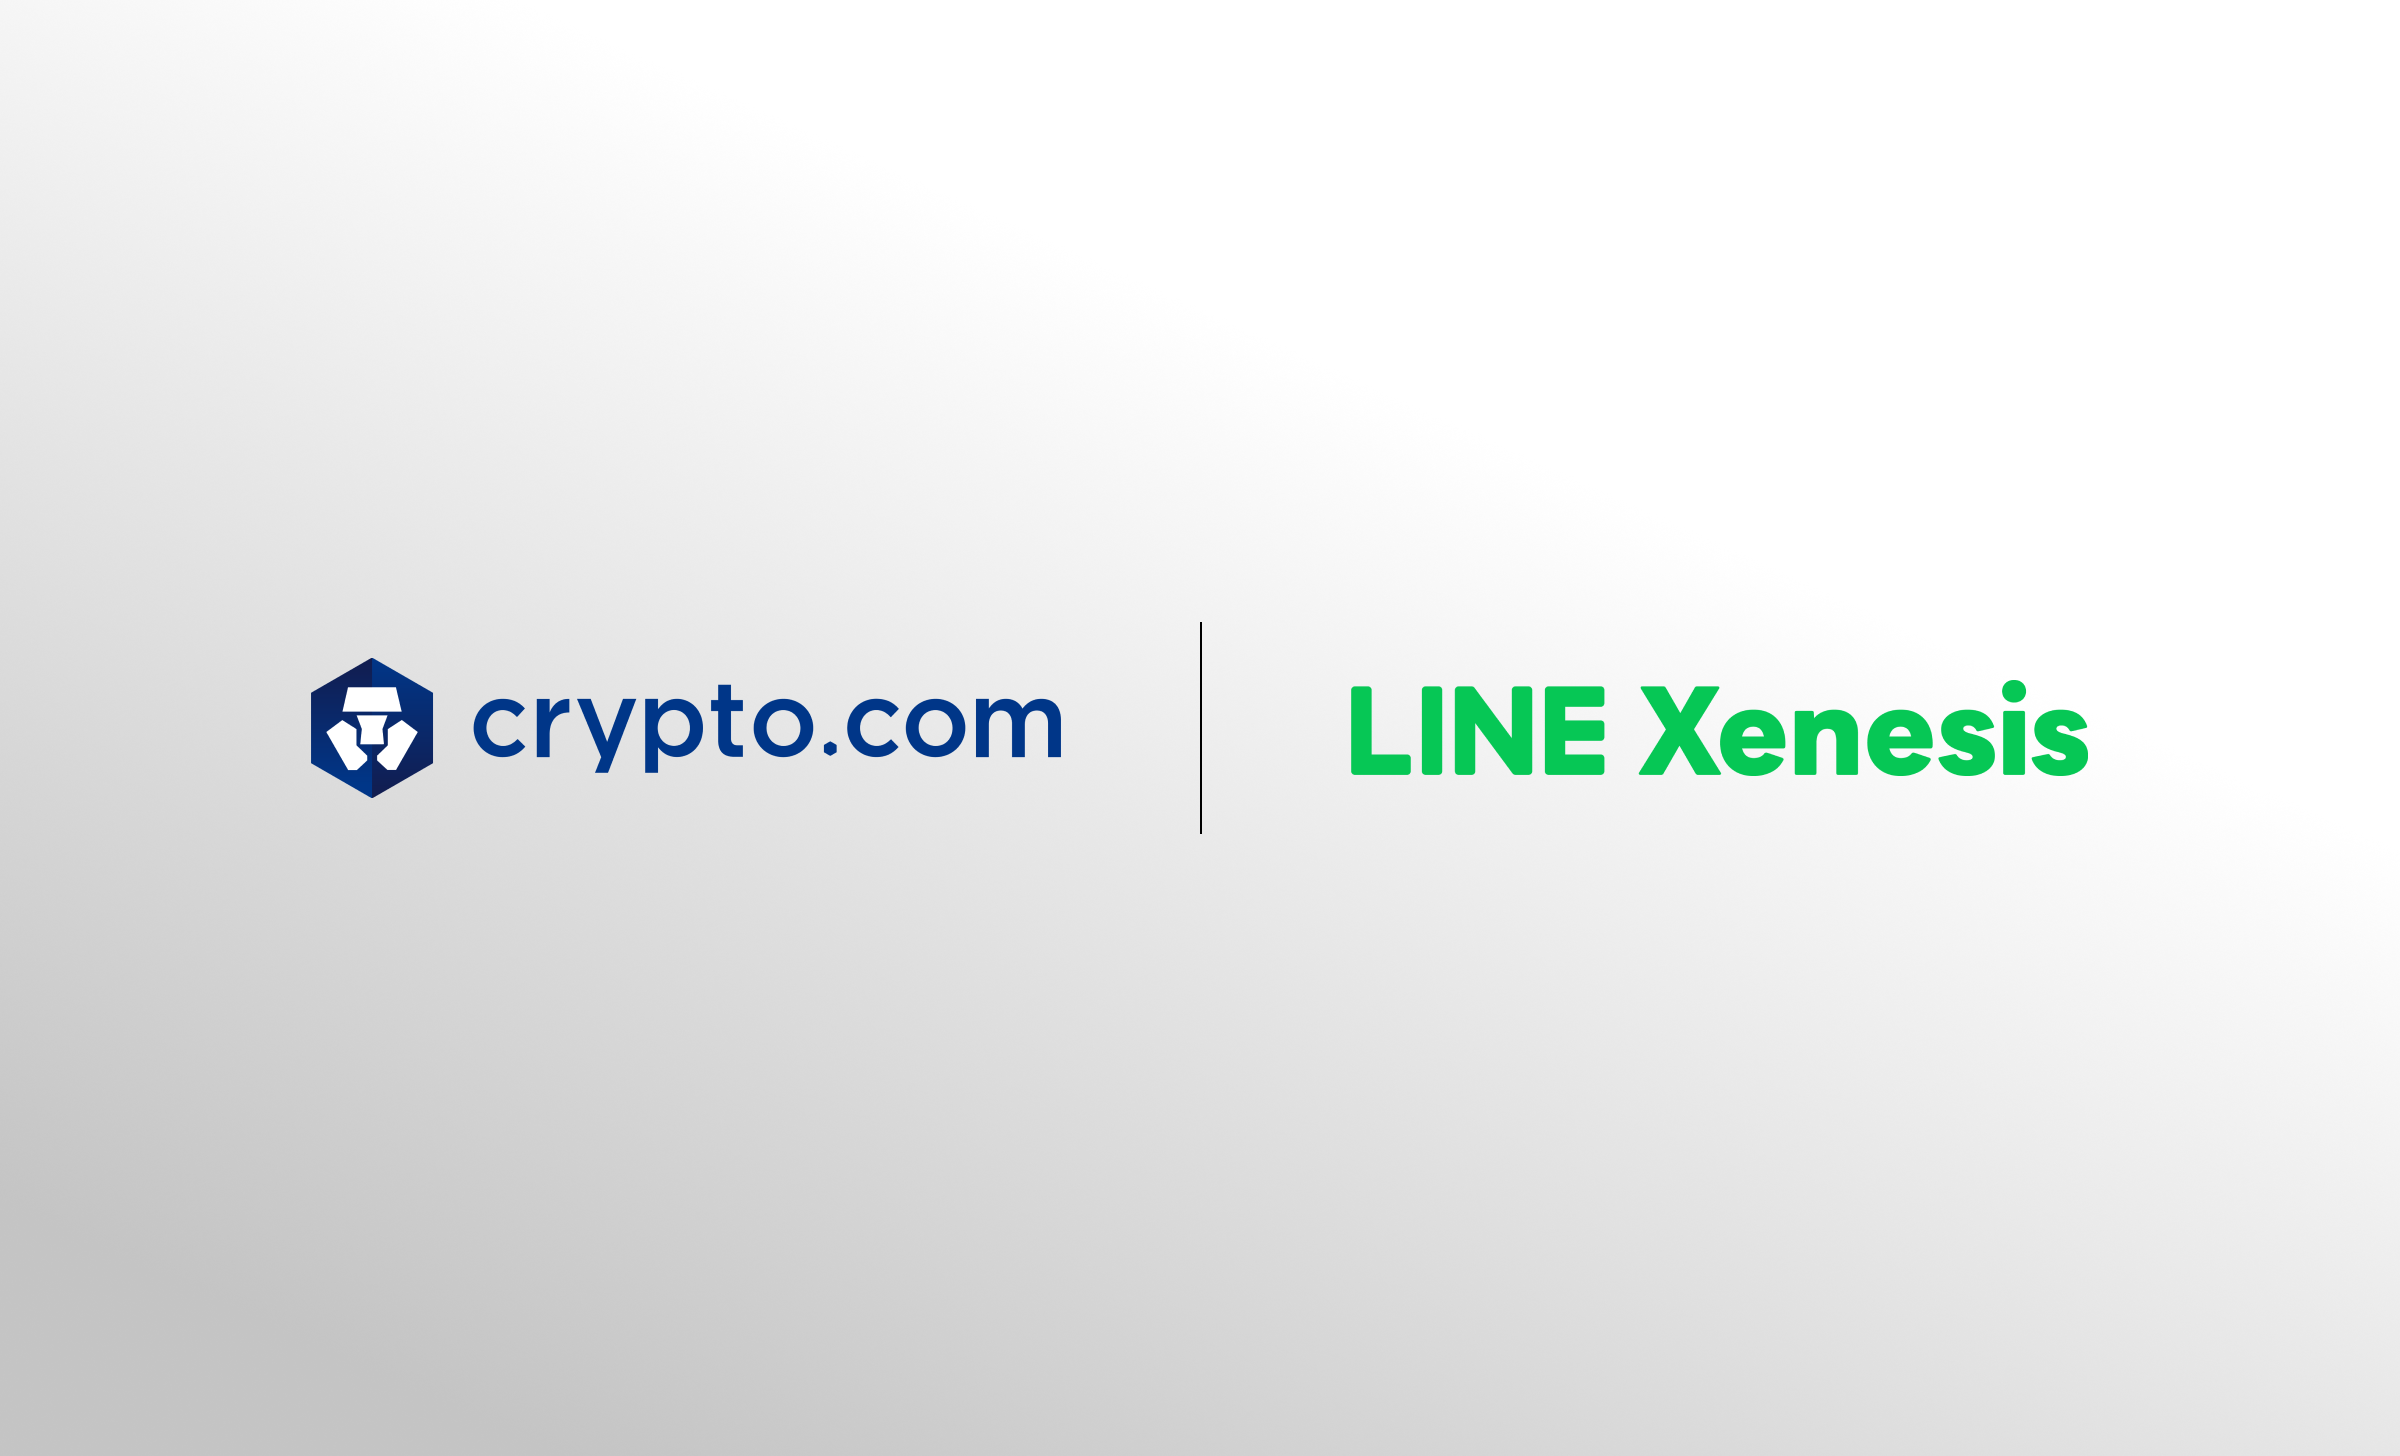 Crypto.com | Line Xenesis